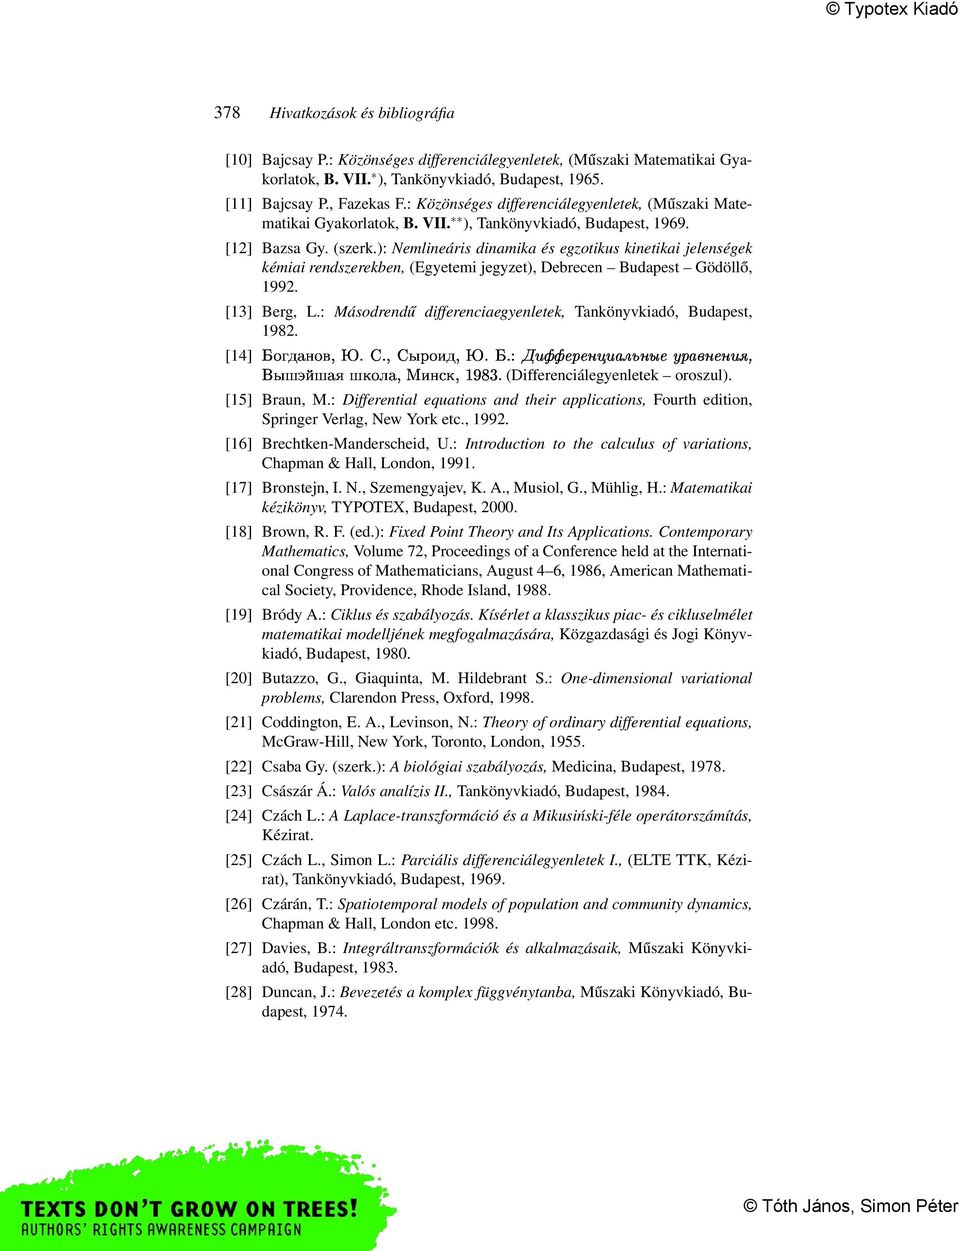 ): Nemlineáris dinamika és egzotikus kinetikai jelenségek kémiai rendszerekben, (Egyetemi jegyzet), Debrecen Budapest Gödöllő, 1992. [13] Berg, L.